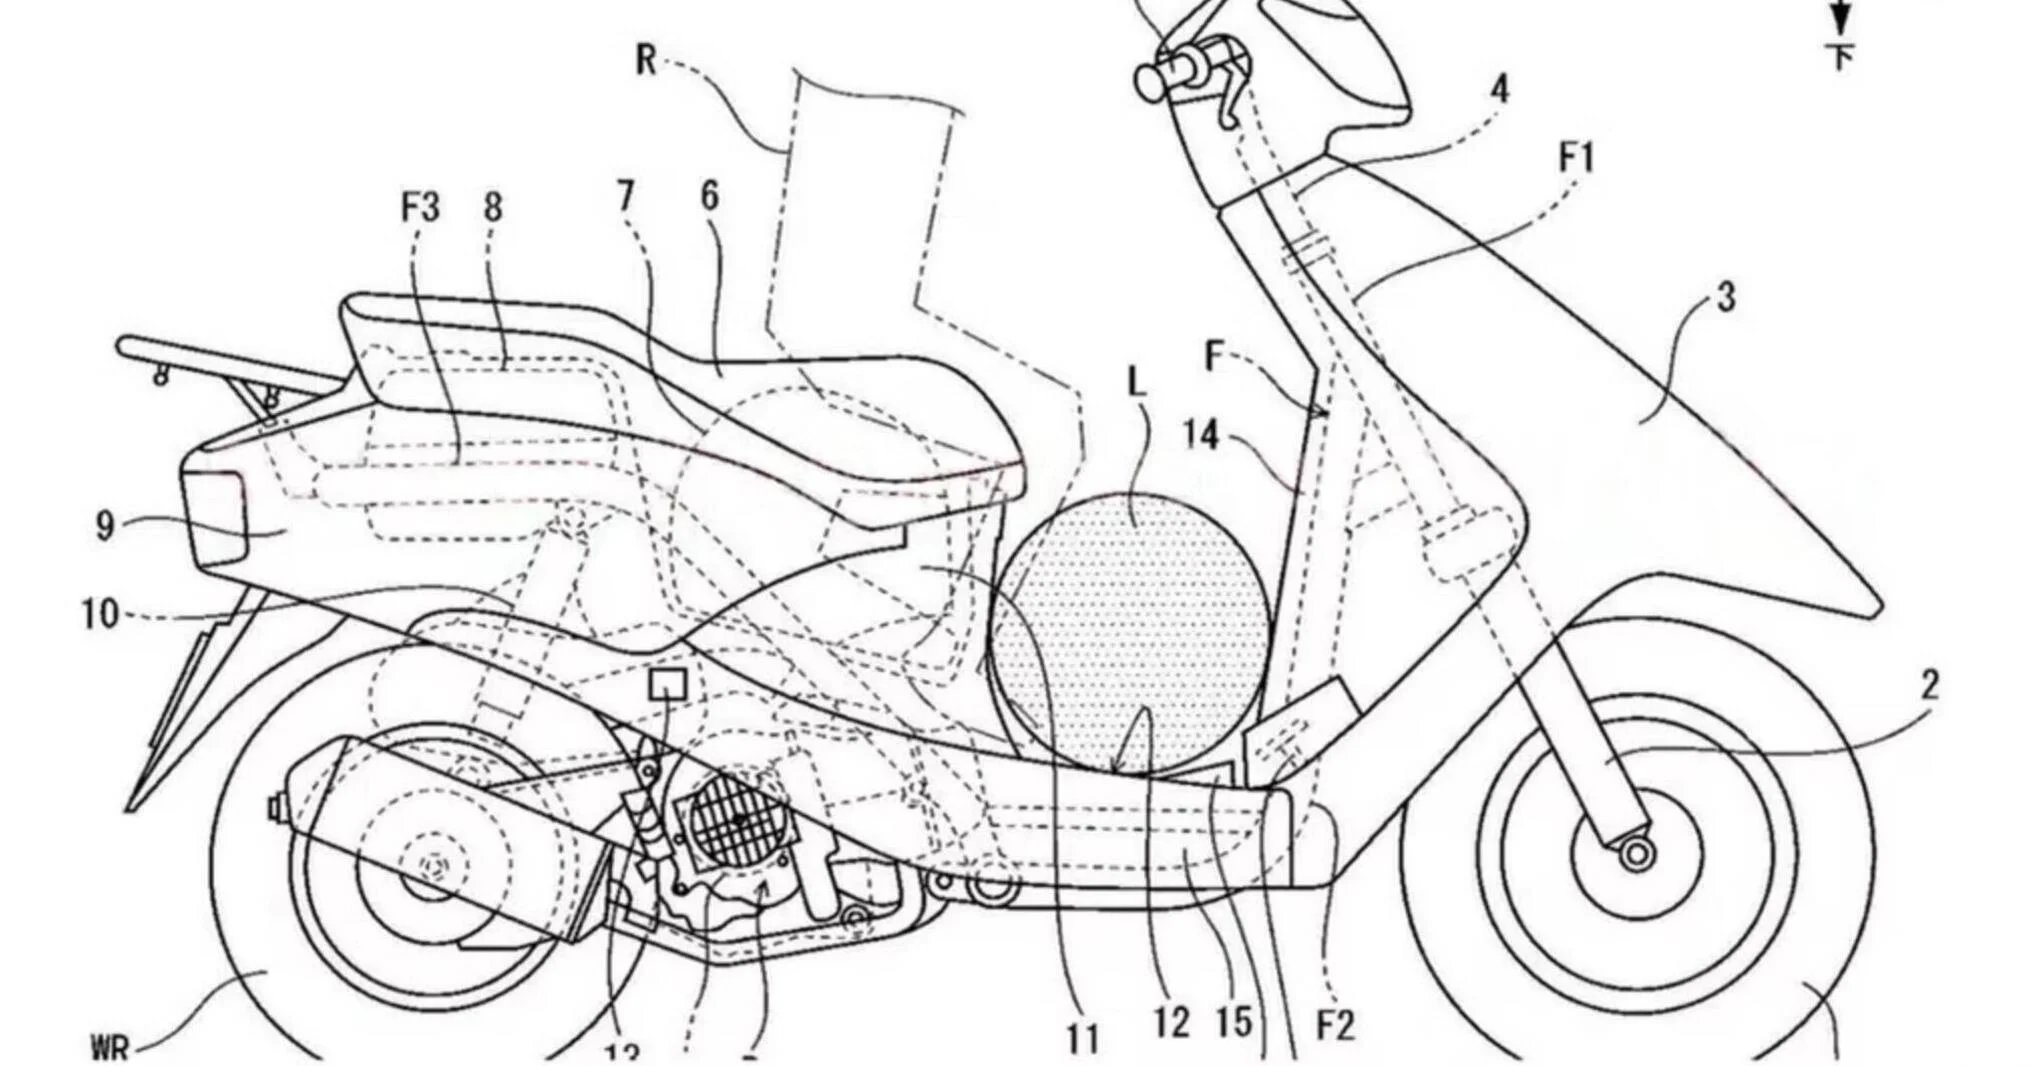 Honda revoluciona scooters com acelerador inspirado nos automóveis